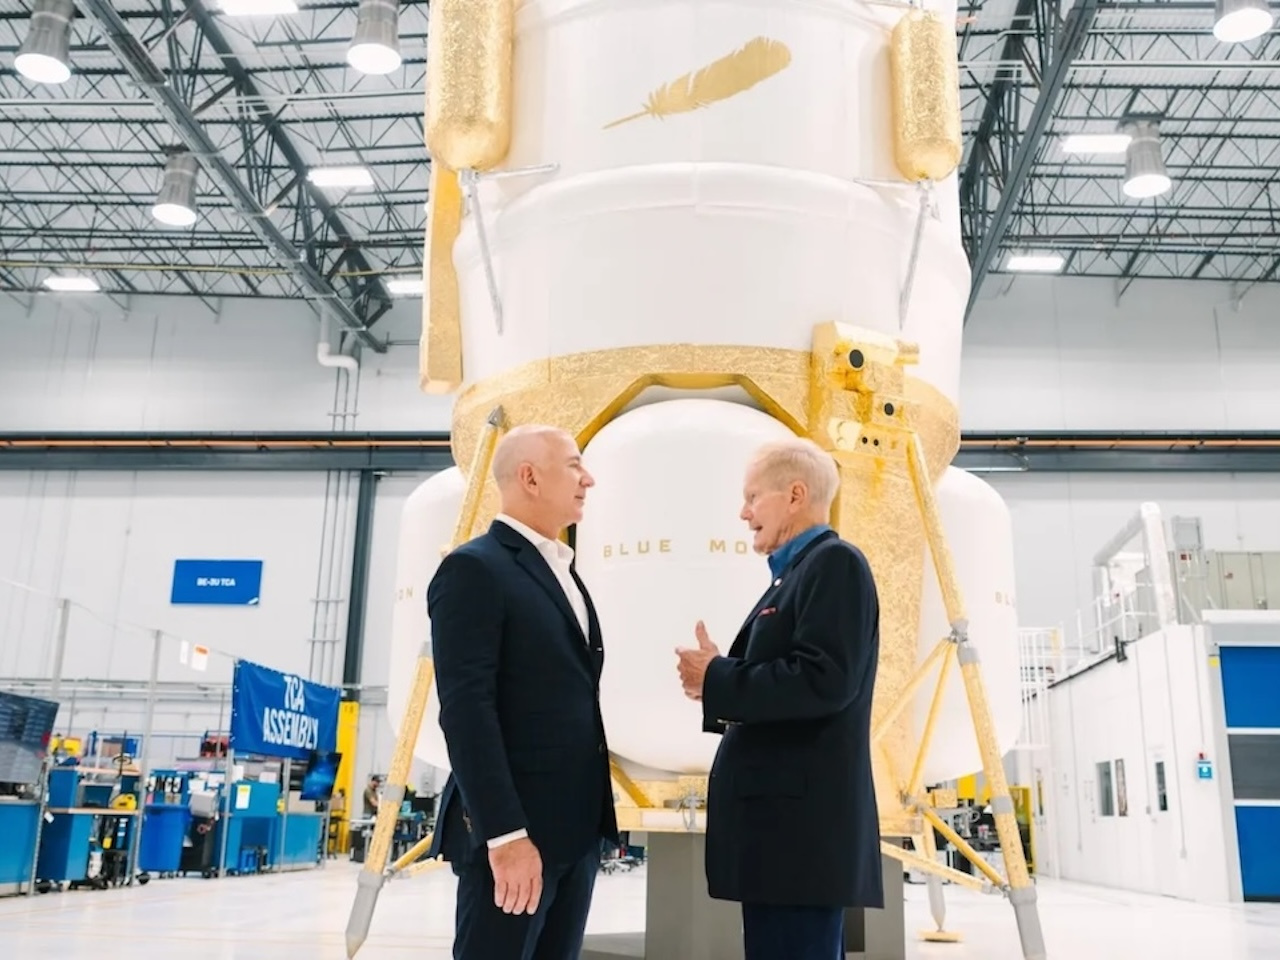 ブルーオリジン、月着陸船「ブルームーン」実証機の2025年打ち上げ目指す